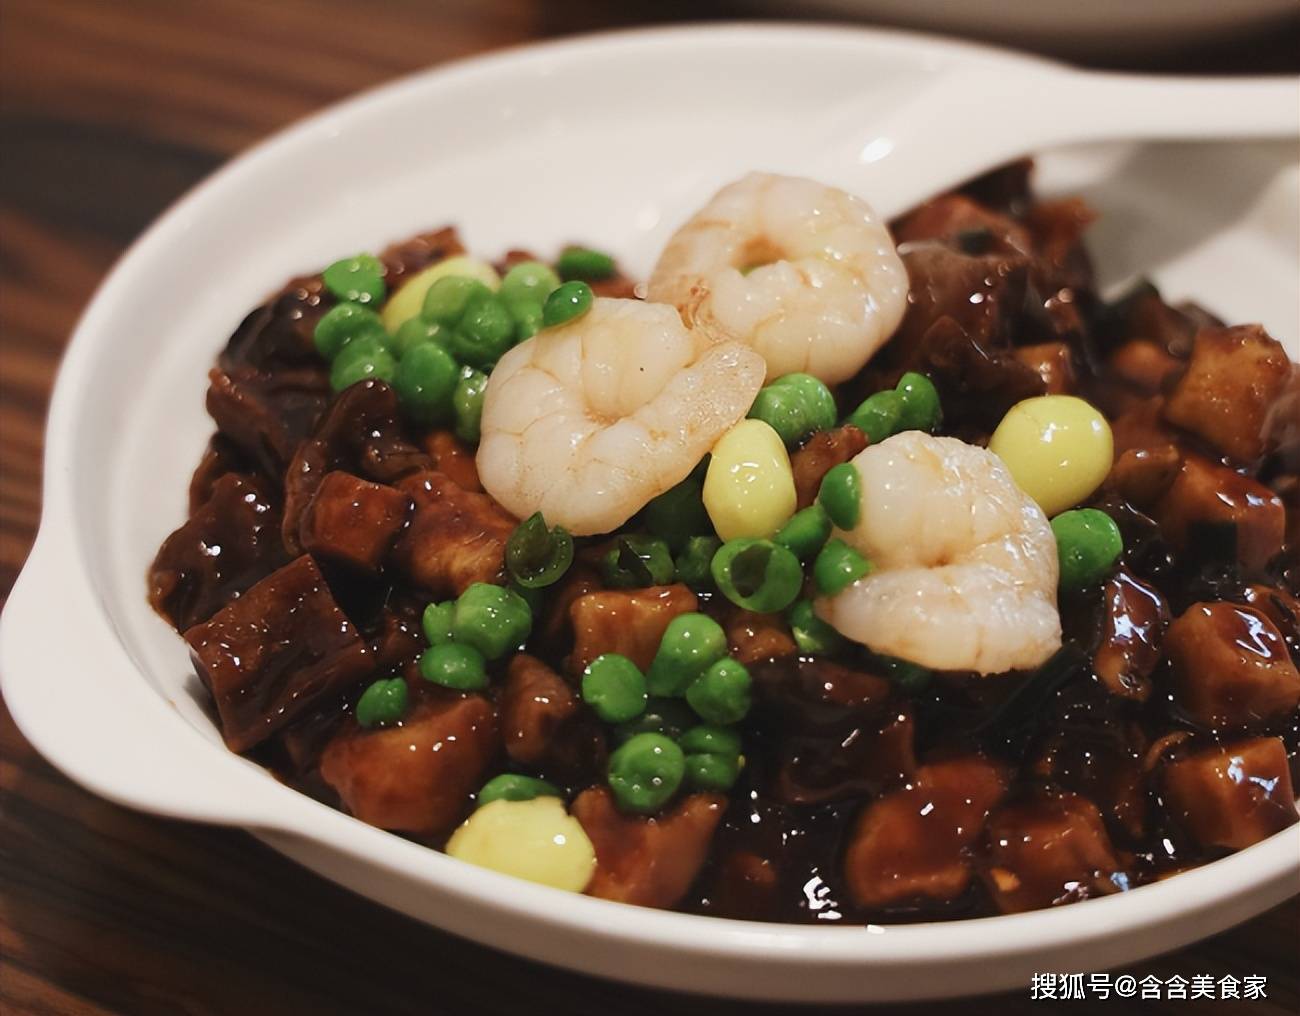 上海7种必吃特色美食,当地人都在推荐的沪菜!